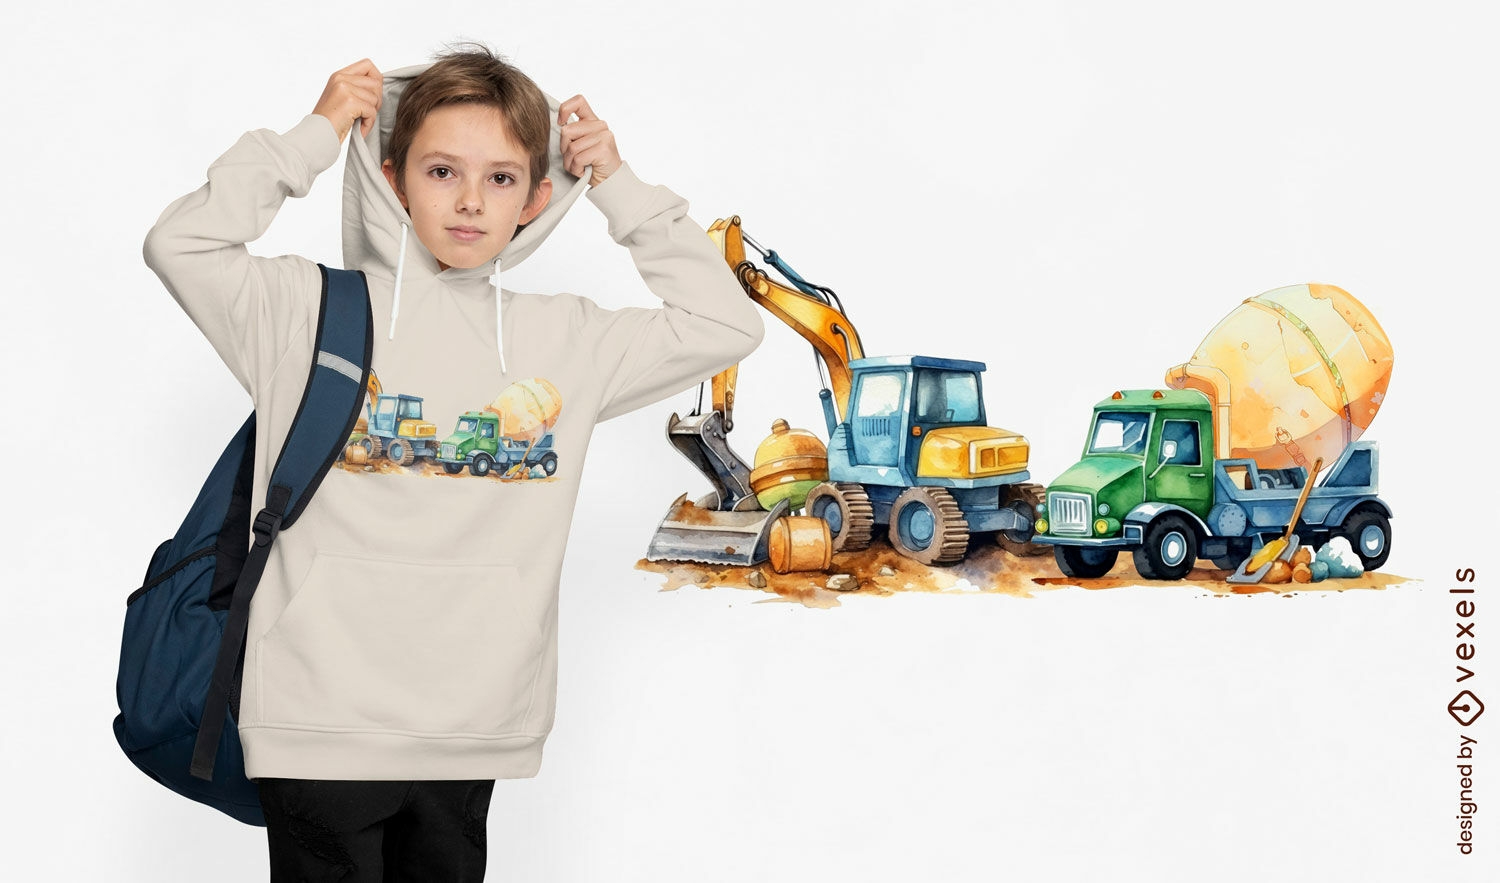 Construction trucks t-shirt design